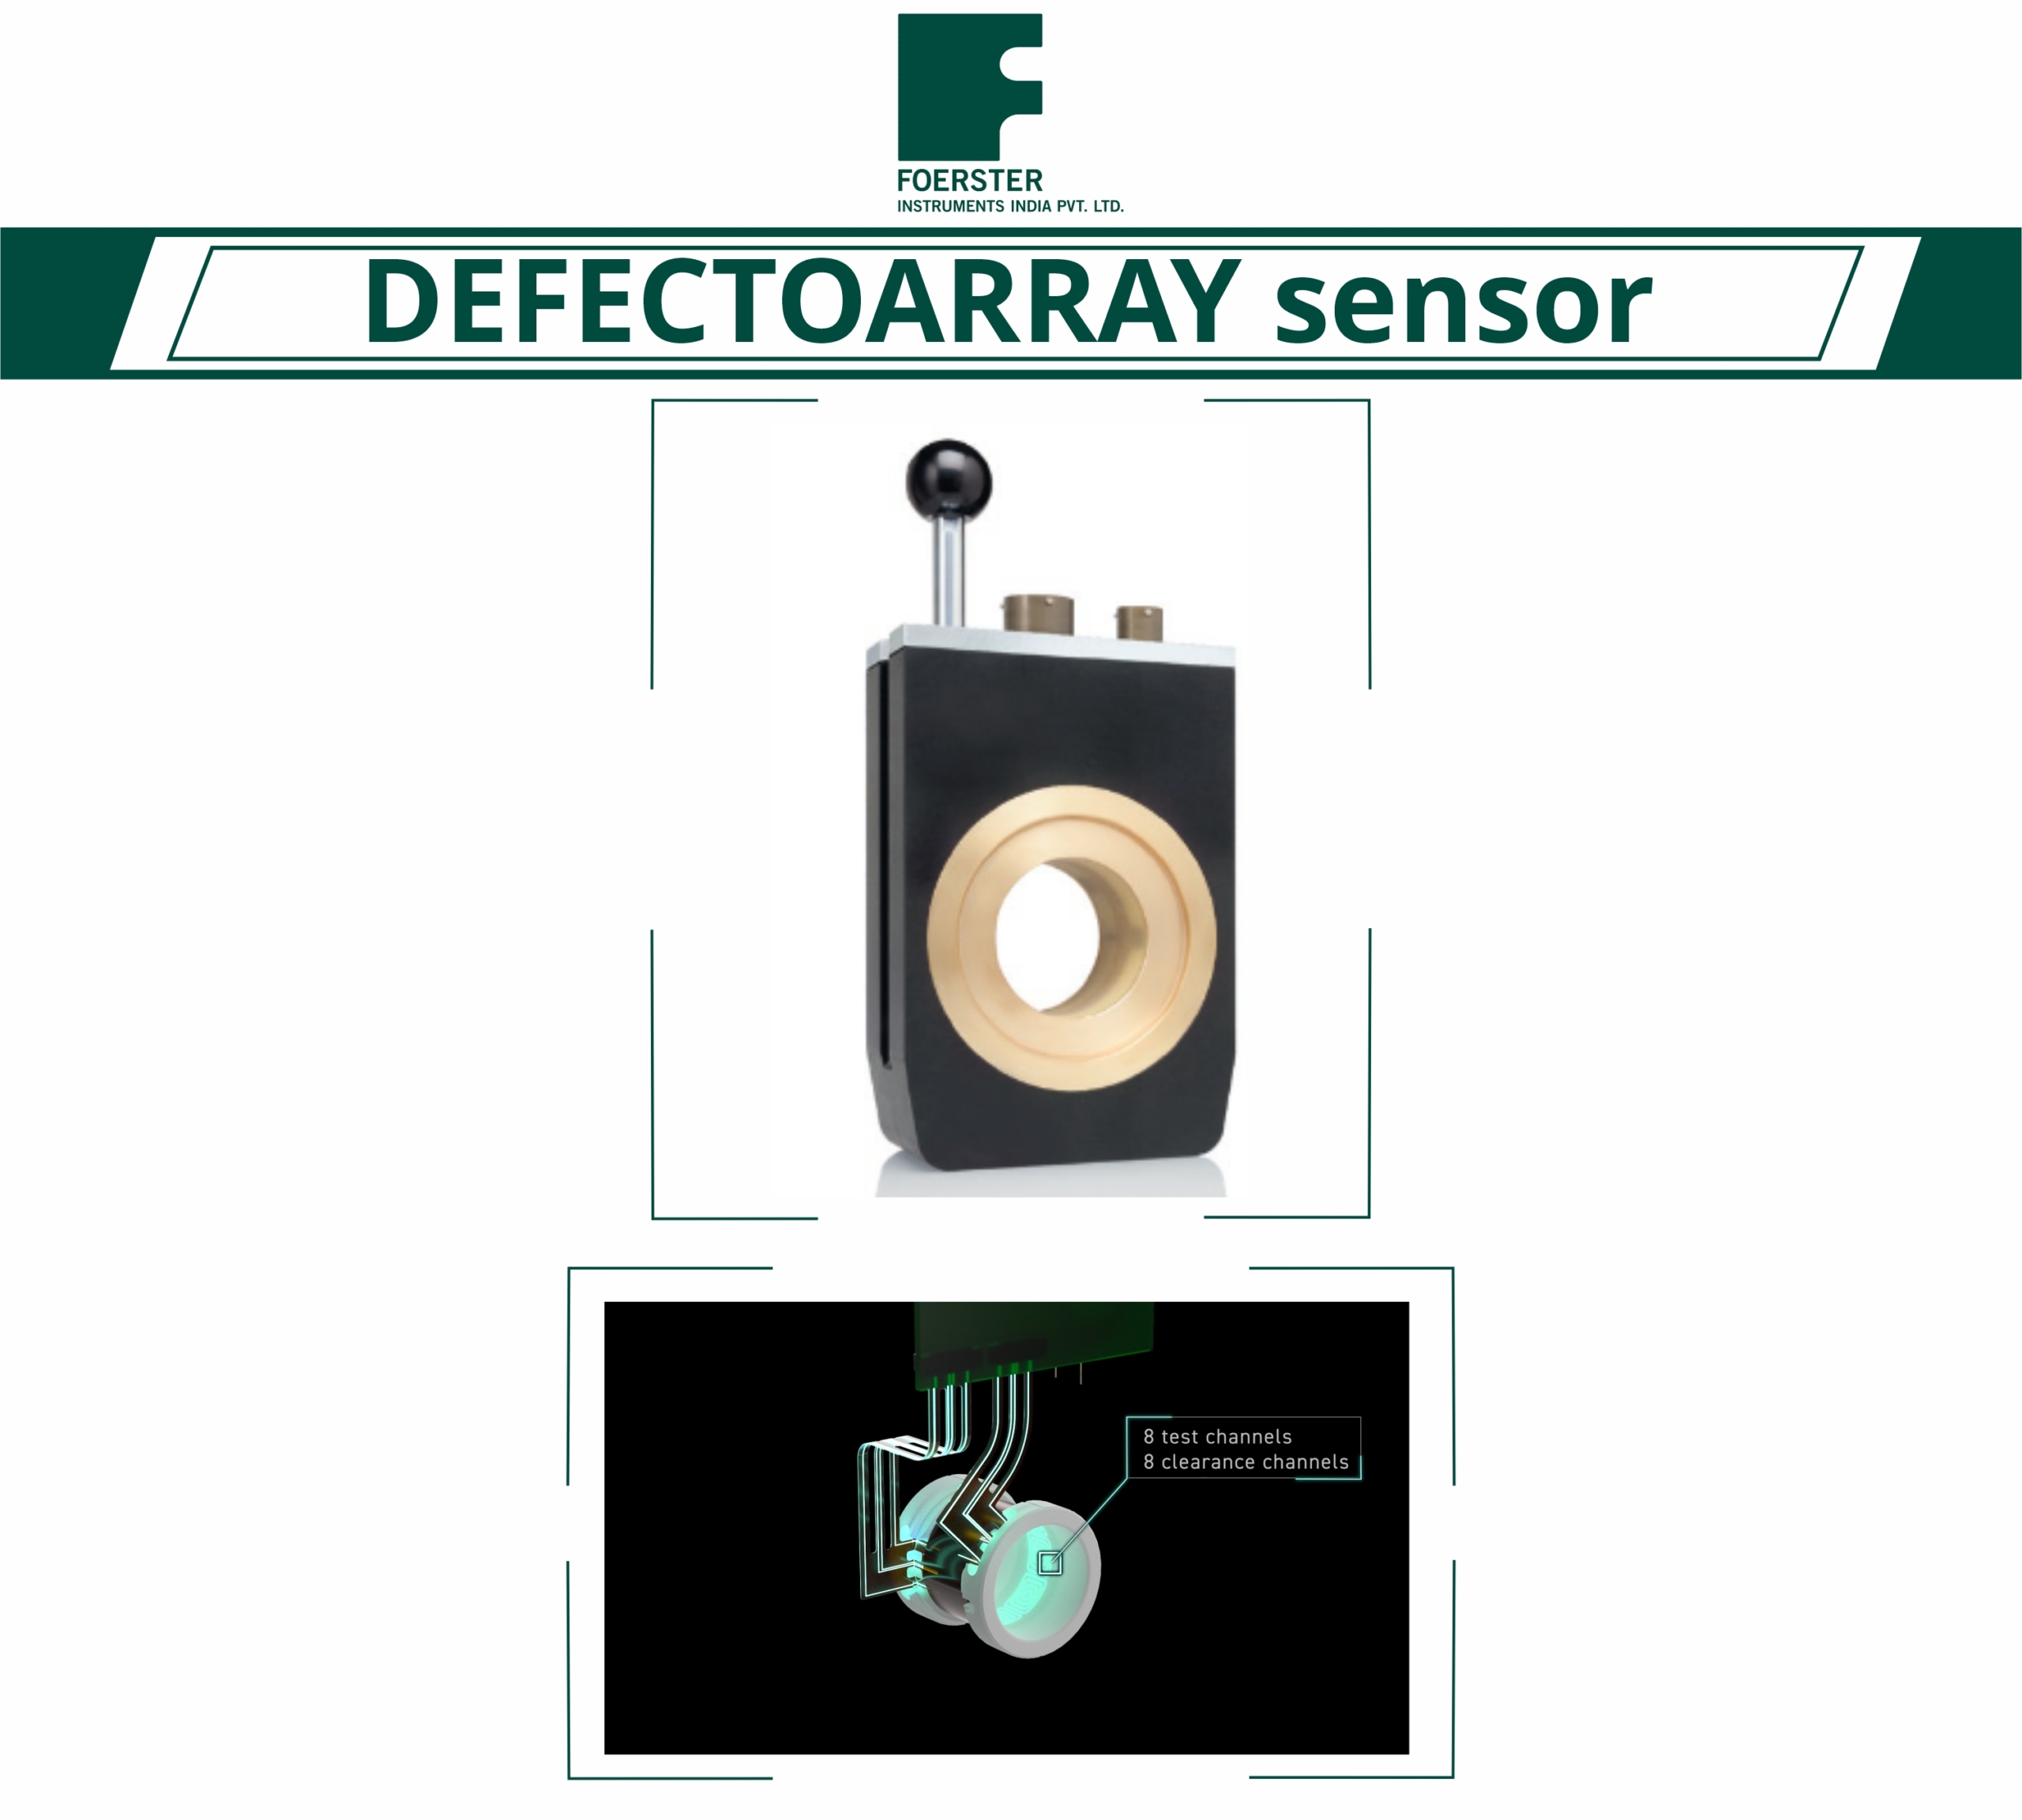 DEFECTOARRAY sensor